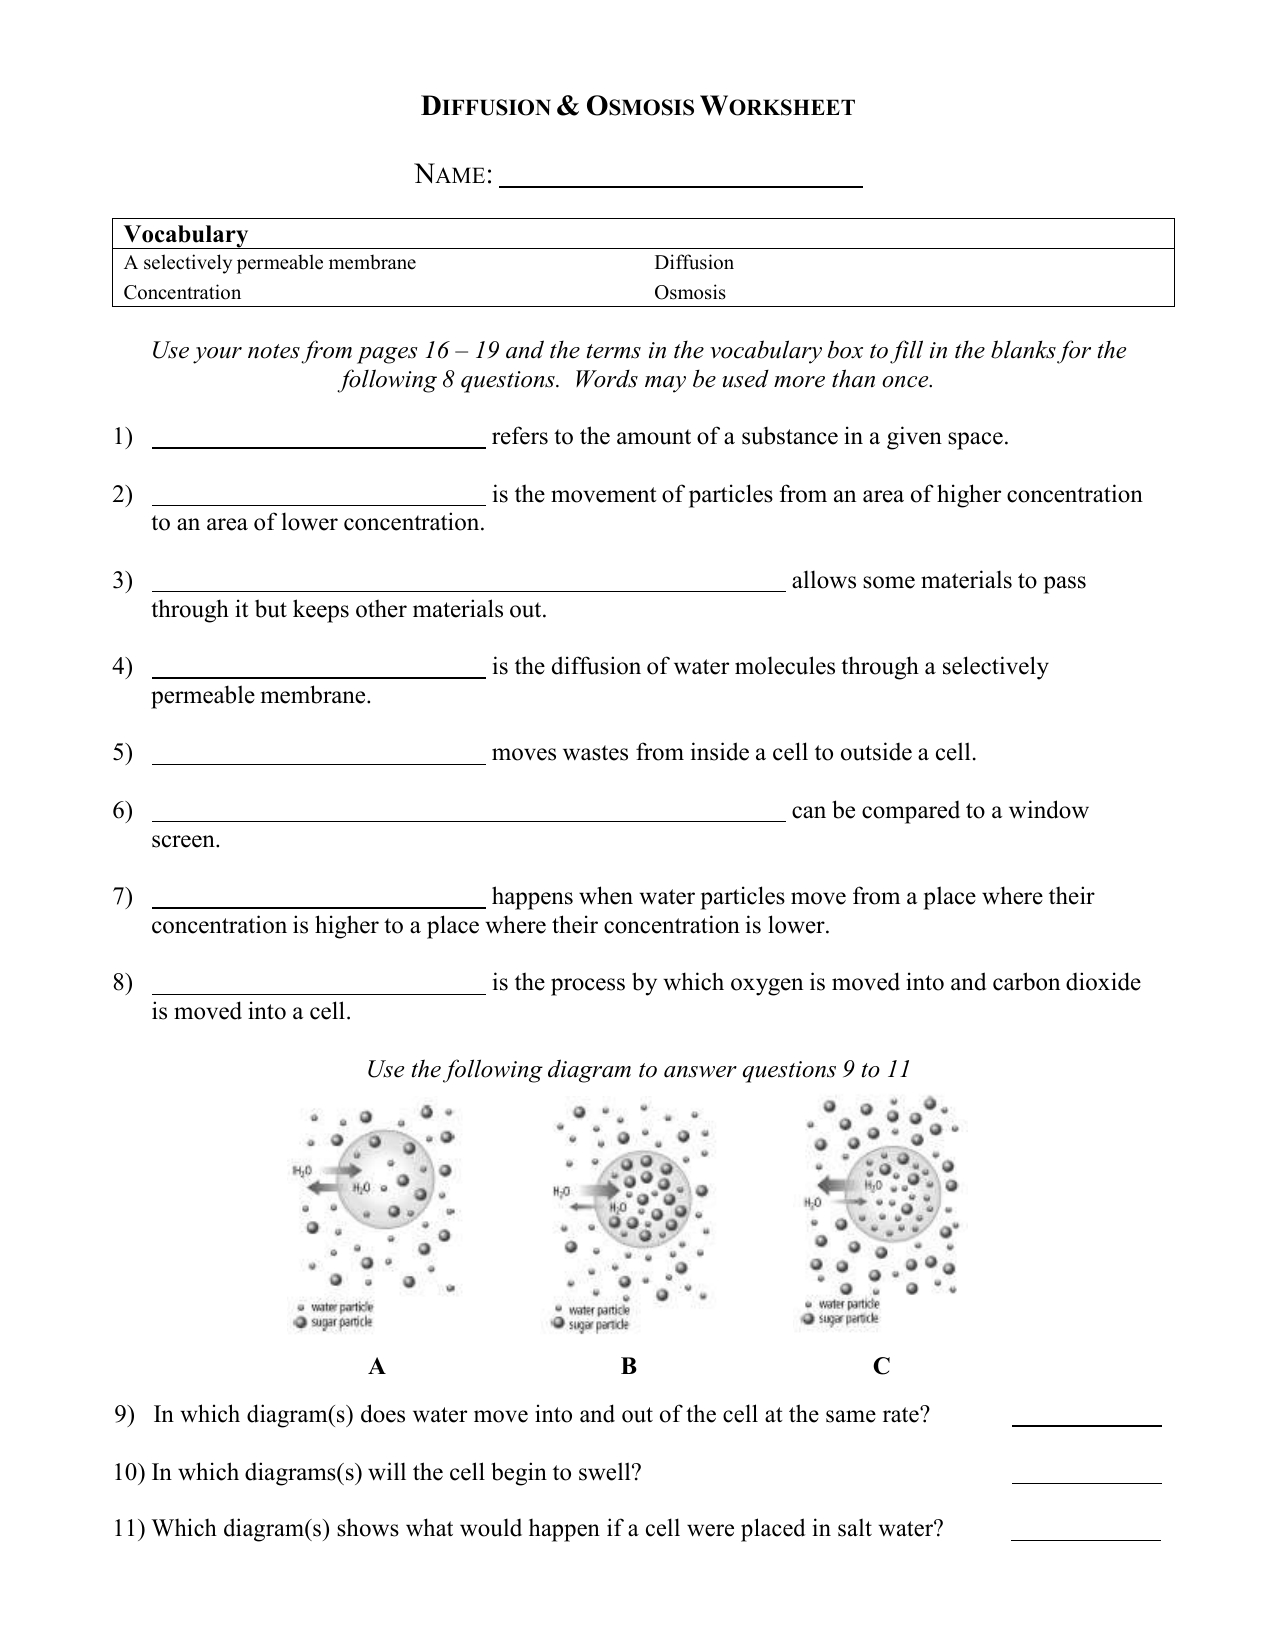 Diffusionosmosisworksheet 4 Throughout Biology Diffusion And Osmosis Worksheet Answer Key